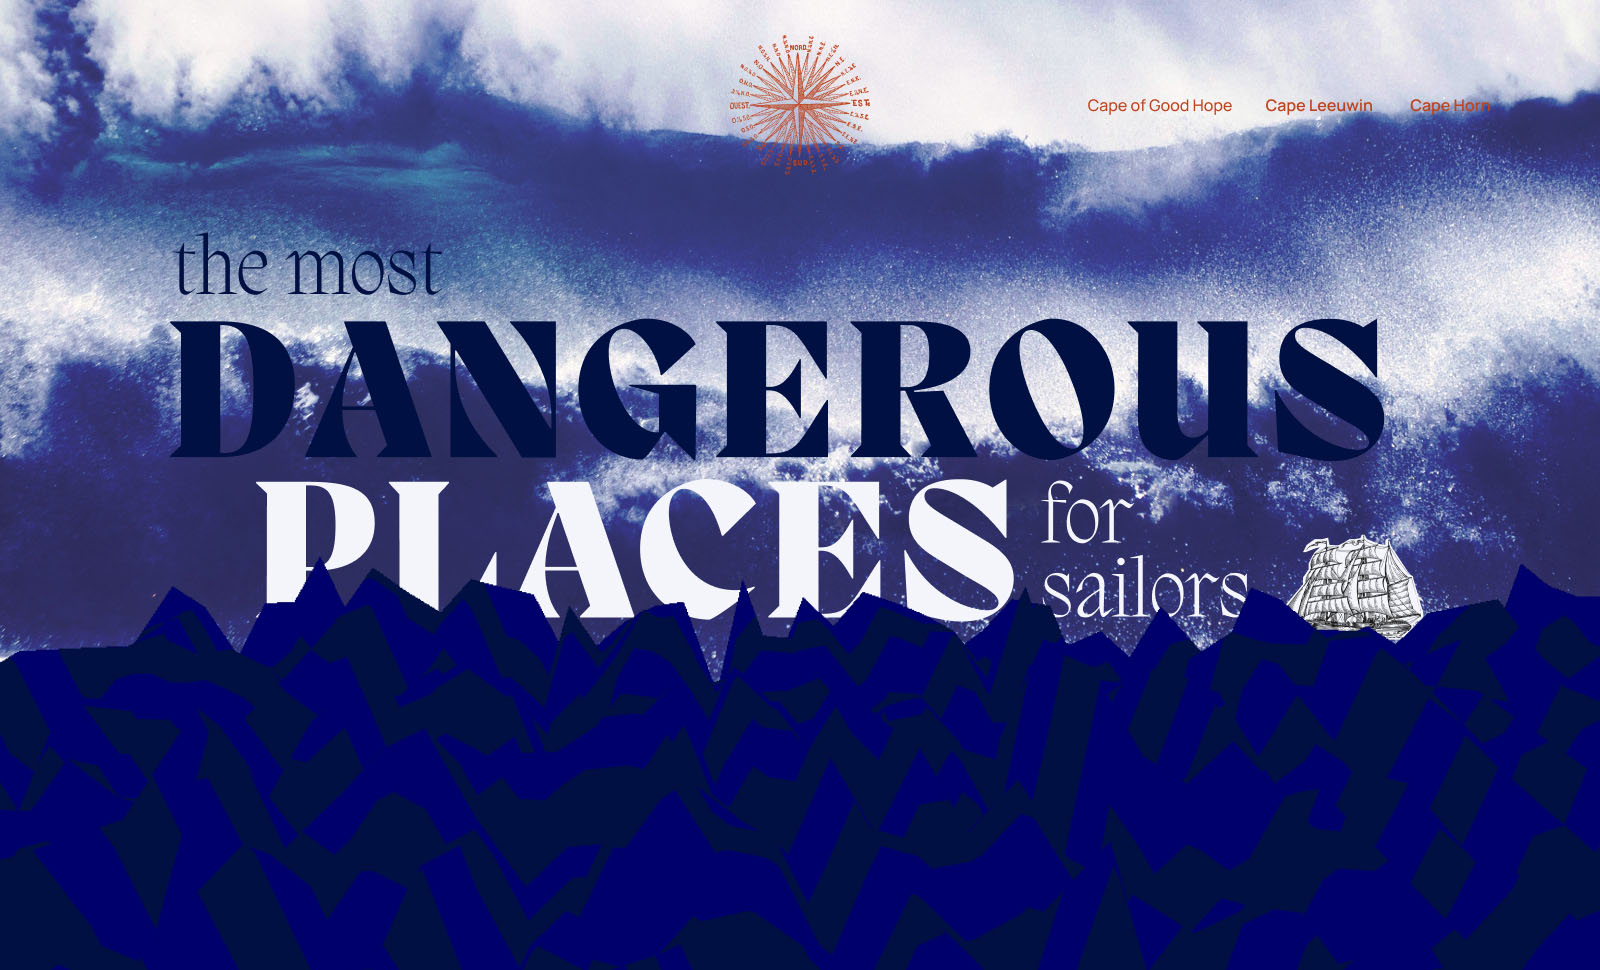 The most dangerous places for sailors